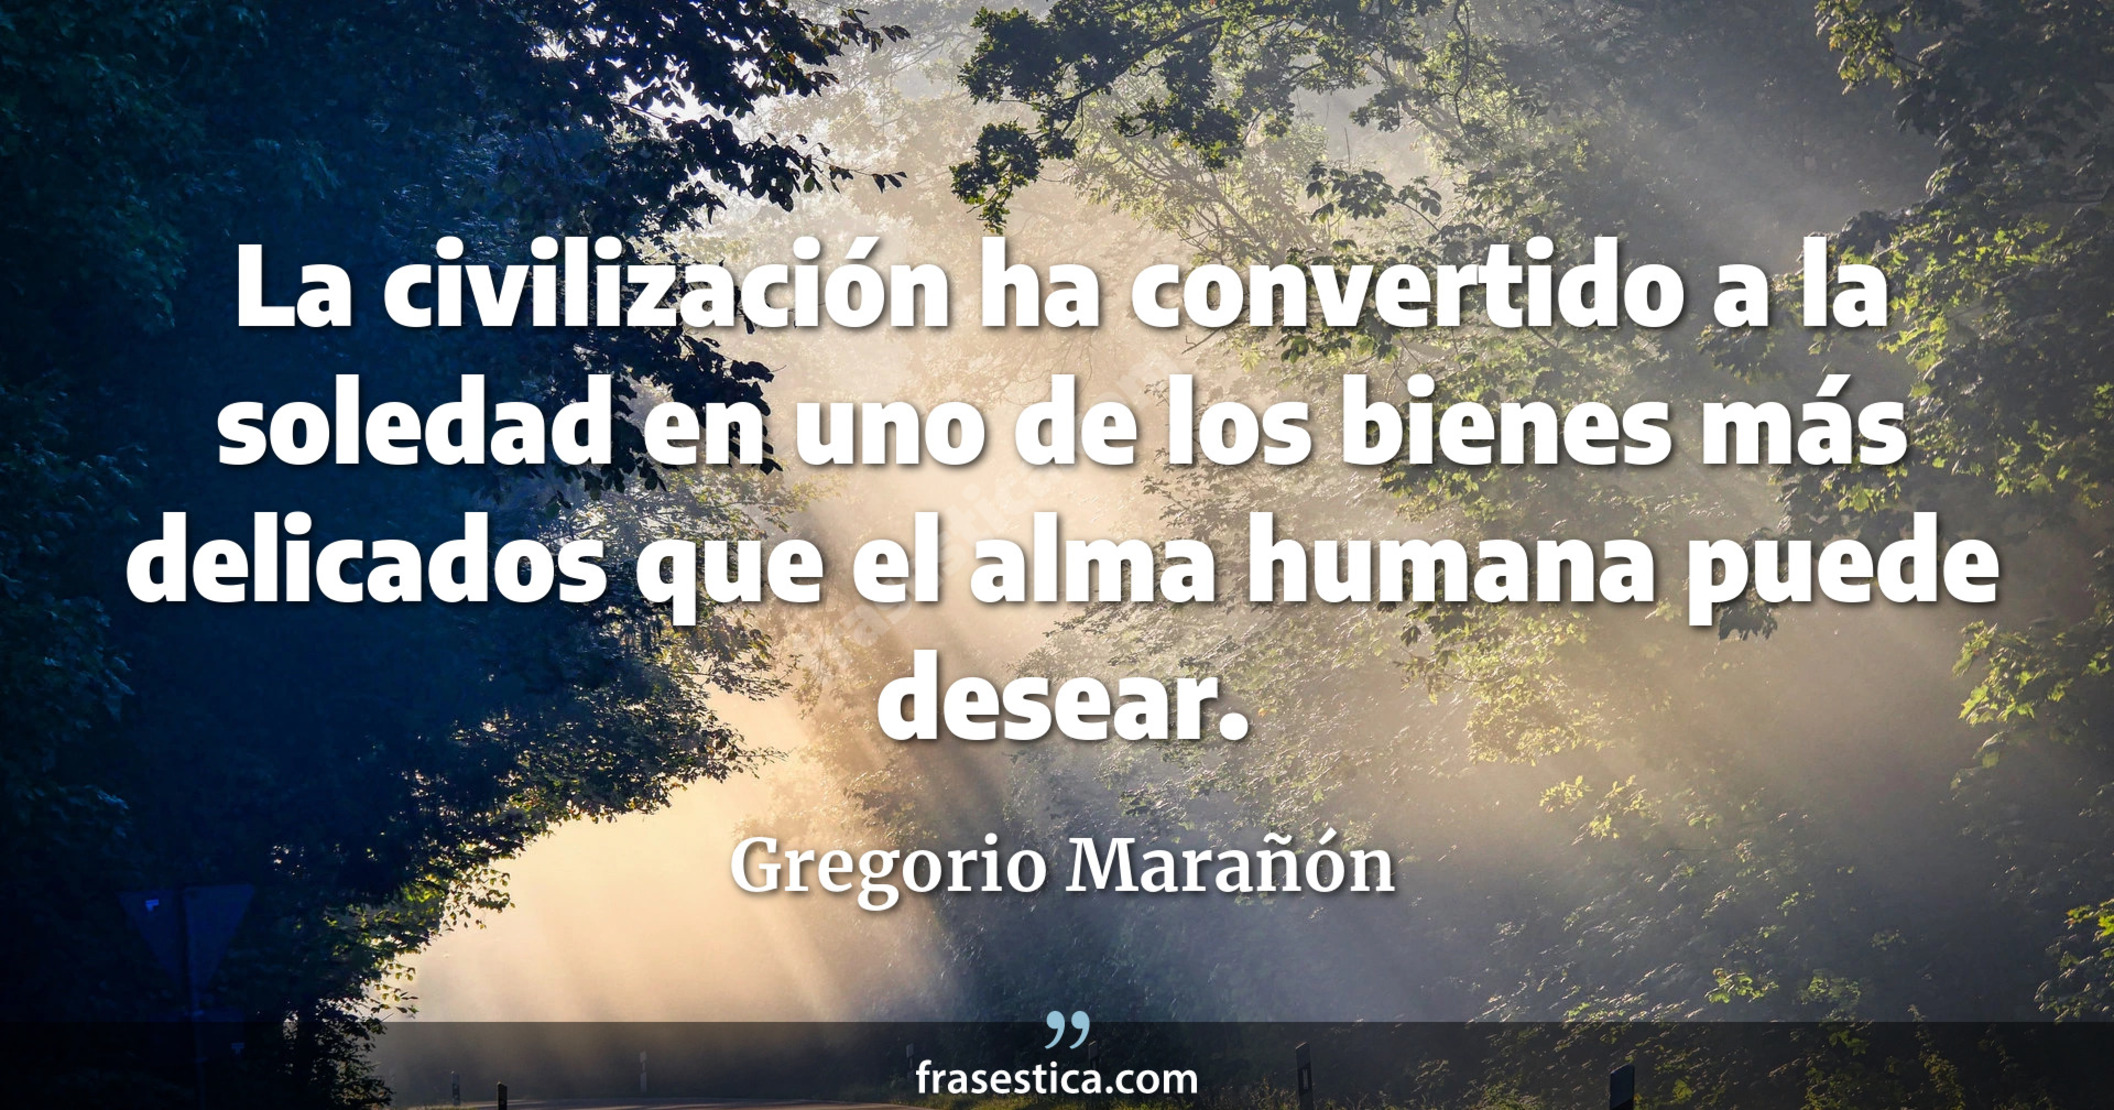 La civilización ha convertido a la soledad en uno de los bienes más delicados que el alma humana puede desear. - Gregorio Marañón